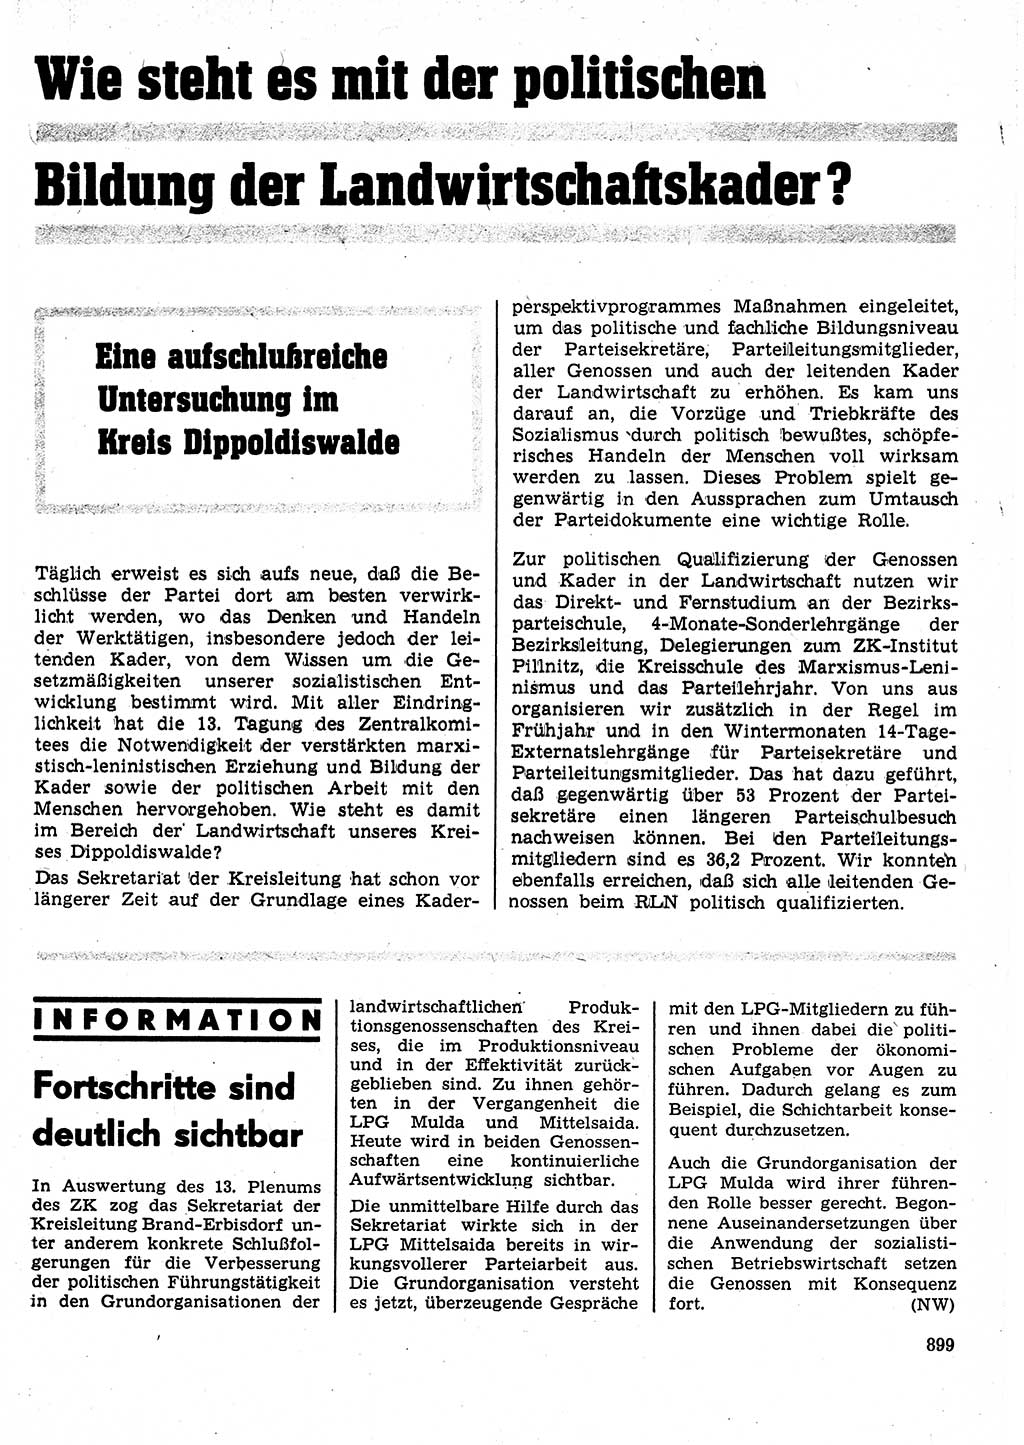 Neuer Weg (NW), Organ des Zentralkomitees (ZK) der SED (Sozialistische Einheitspartei Deutschlands) für Fragen des Parteilebens, 25. Jahrgang [Deutsche Demokratische Republik (DDR)] 1970, Seite 899 (NW ZK SED DDR 1970, S. 899)